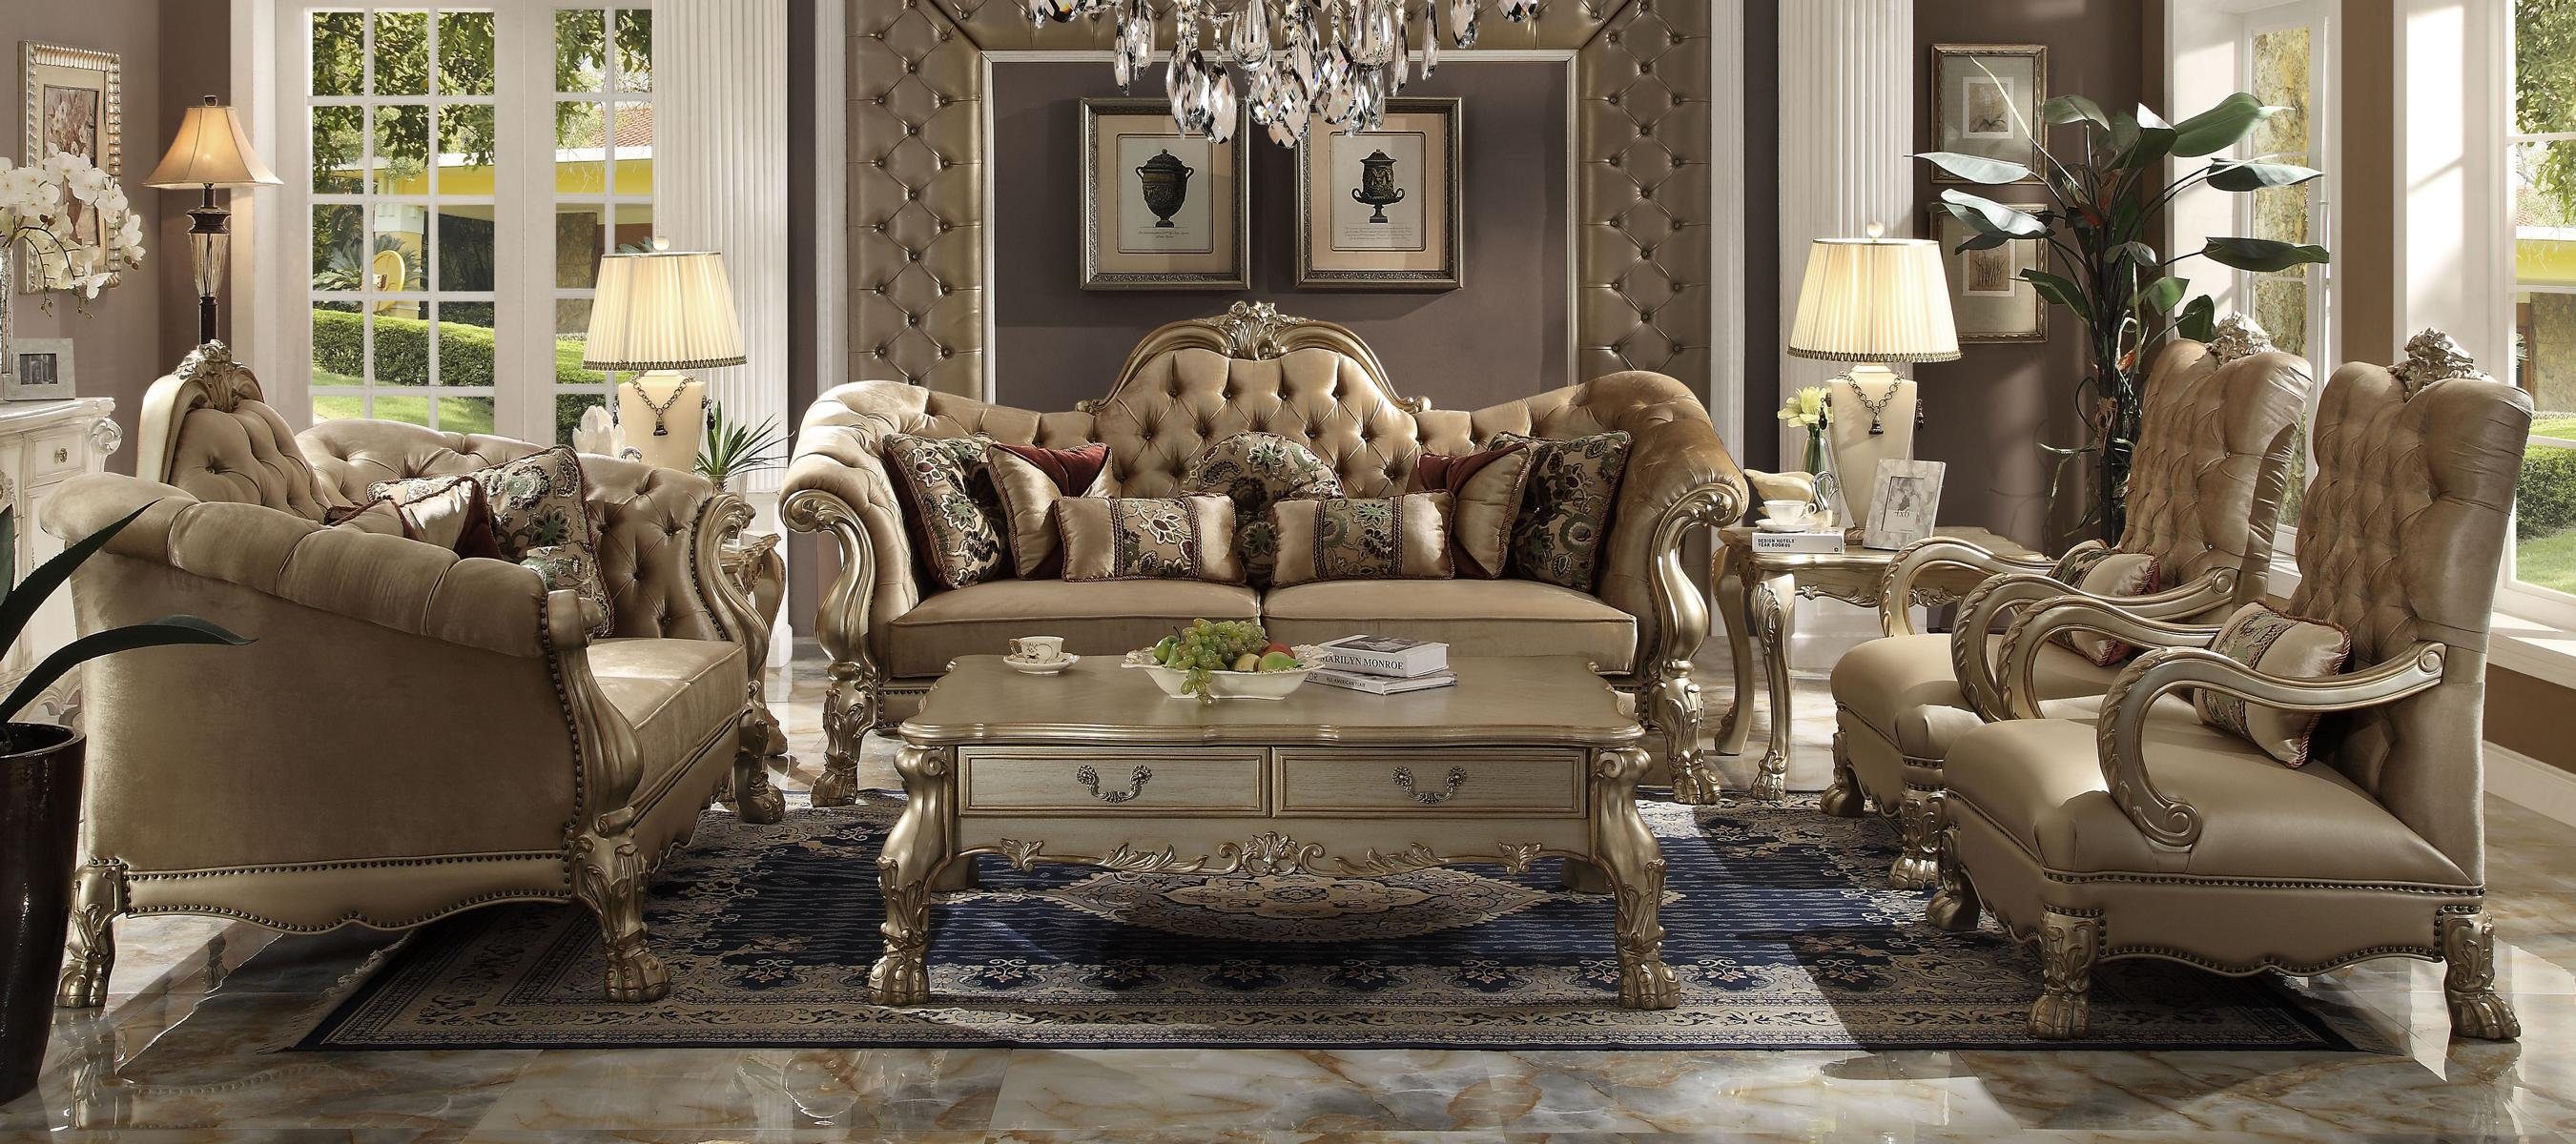 Wohnzimmer-Set, Polster 3+2+1+1 Sitzer Couch Möbel Sofa JVmoebel Luxus Sofagarnitur